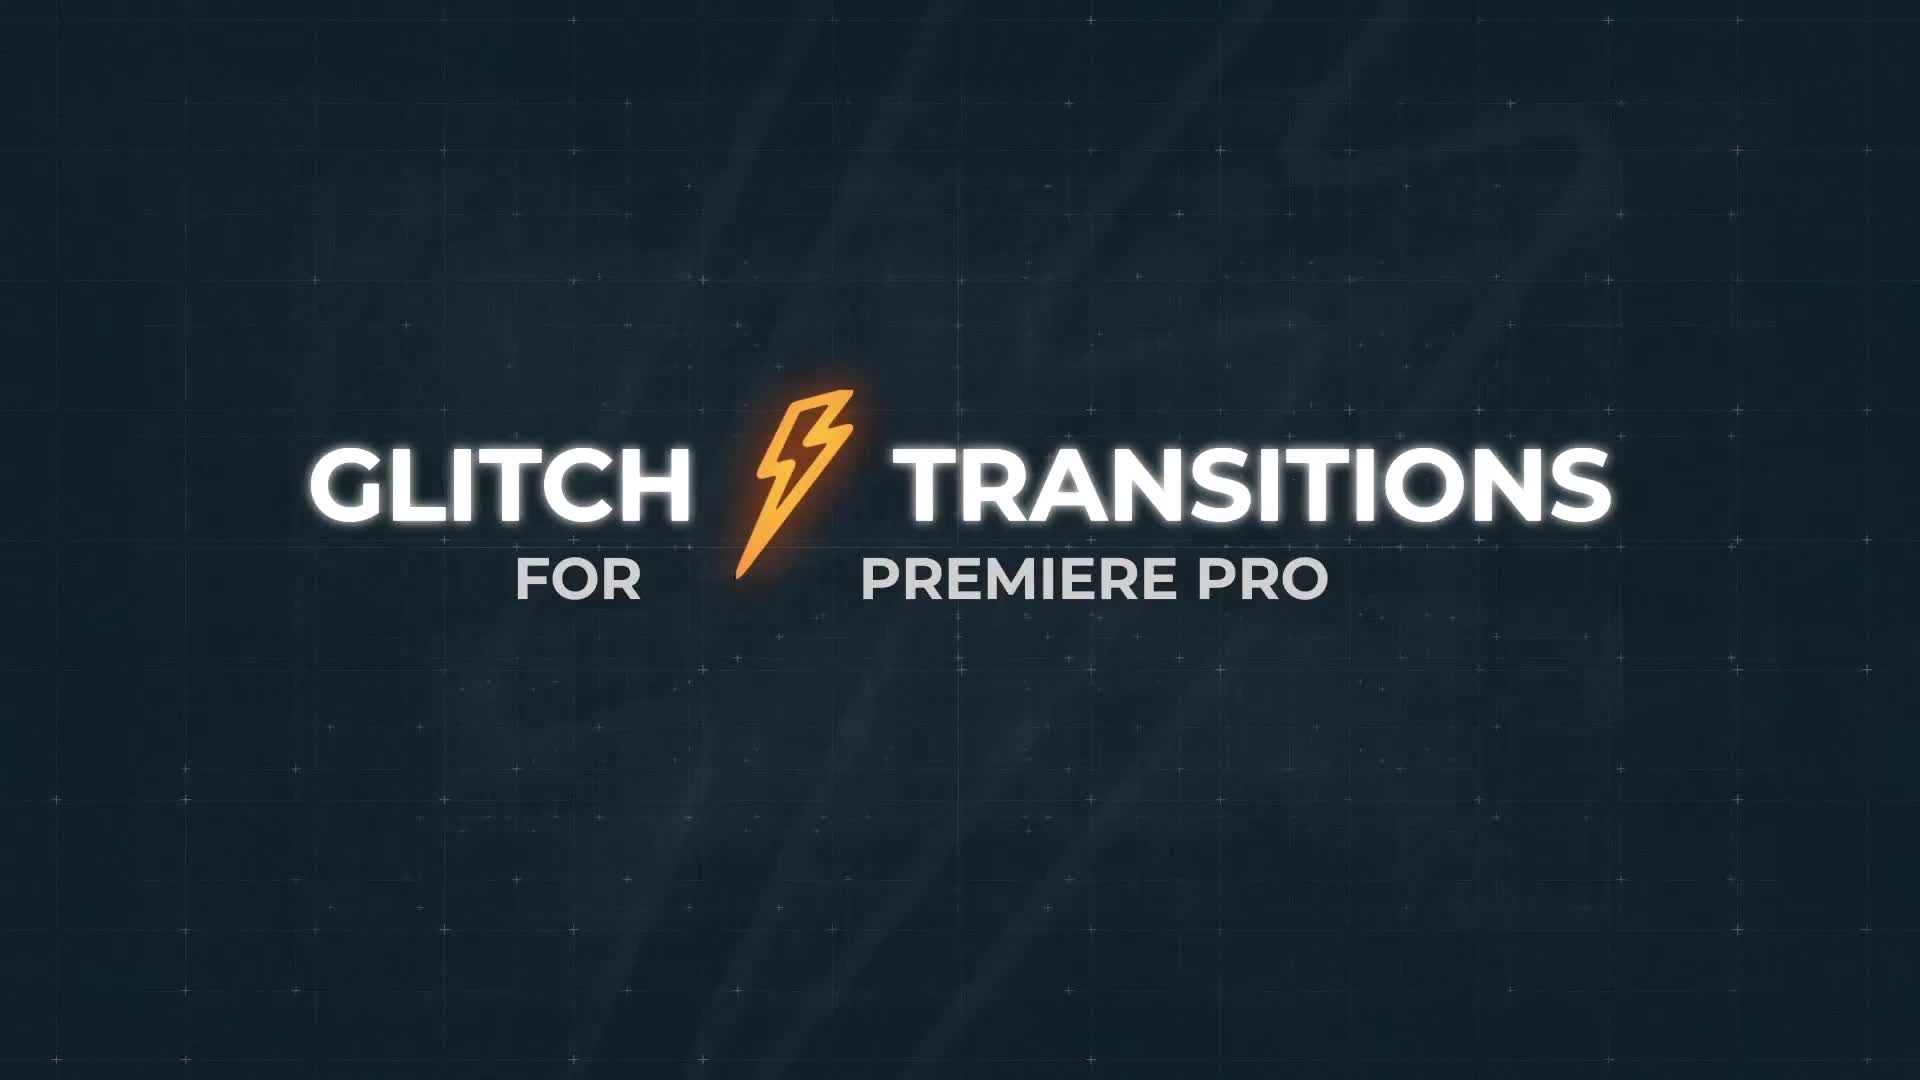 Glitch Transitions for Premiere Pro Videohive 25152760 Premiere Pro Image 1